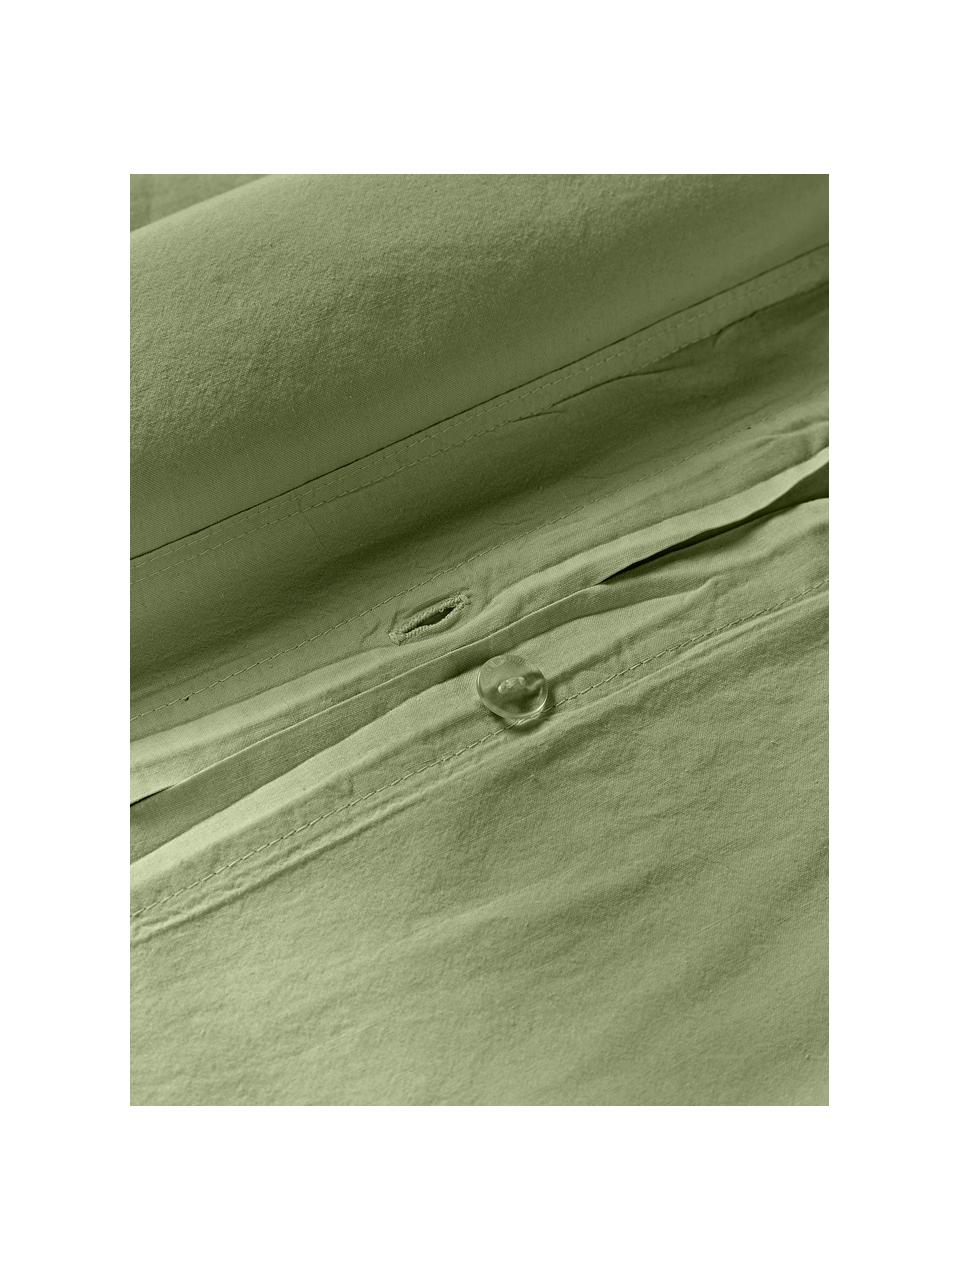 Gewaschener Baumwoll-Bettdeckenbezug Darlyn, 100 % Baumwolle
Fadendichte 150 TC, Standard Qualität

Bettwäsche aus Baumwolle fühlt sich auf der Haut angenehm weich an, nimmt Feuchtigkeit gut auf und eignet sich für Allergiker.

Durch ein besonderes Waschungsverfahren erhält der Stoff eine robuste, unregelmässige Stonewash-Optik. Ausserdem wird der Stoff dadurch weich und geschmeidig im Griff und erhält eine natürliche Knitter-Optik, die kein Bügeln erfordert und Gemütlichkeit ausstrahlt.

Das in diesem Produkt verwendete Material ist schadstoffgeprüft und zertifiziert nach STANDARD 100 by OEKO-TEX®, 4265CIT, CITEVE., Olivgrün, B 200 x L 200 cm